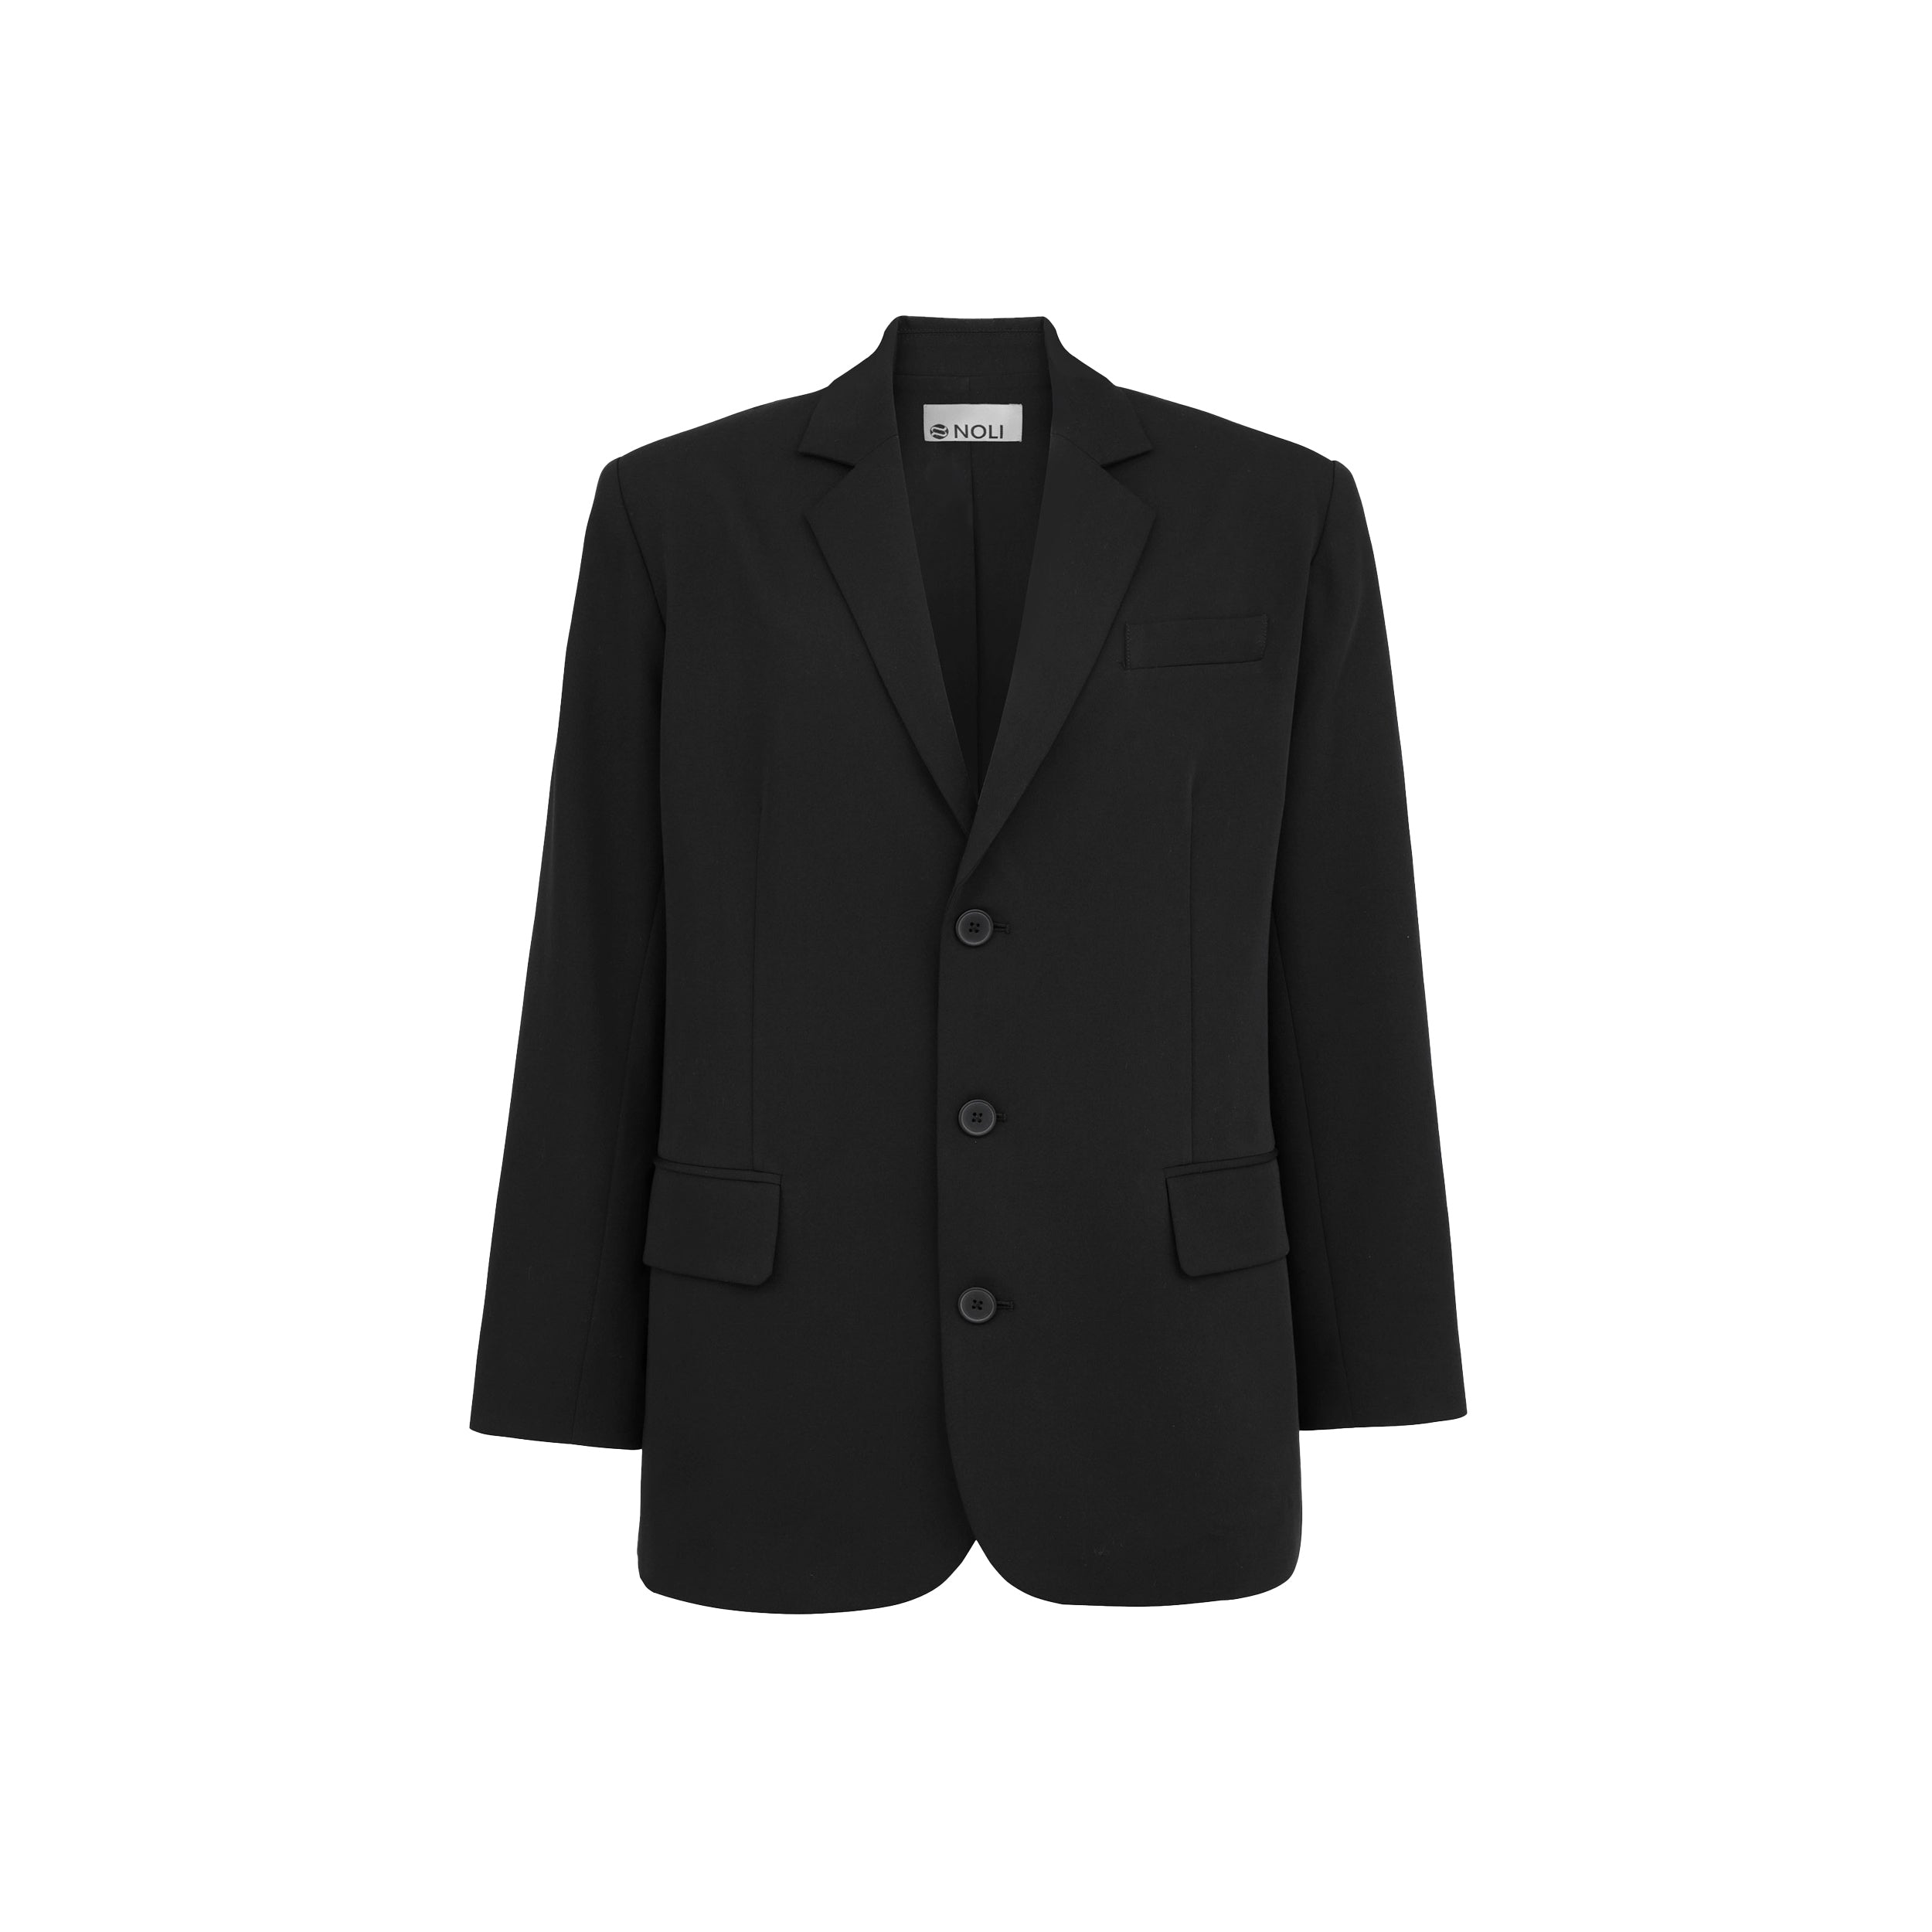 Product shot of oversized black blazer.